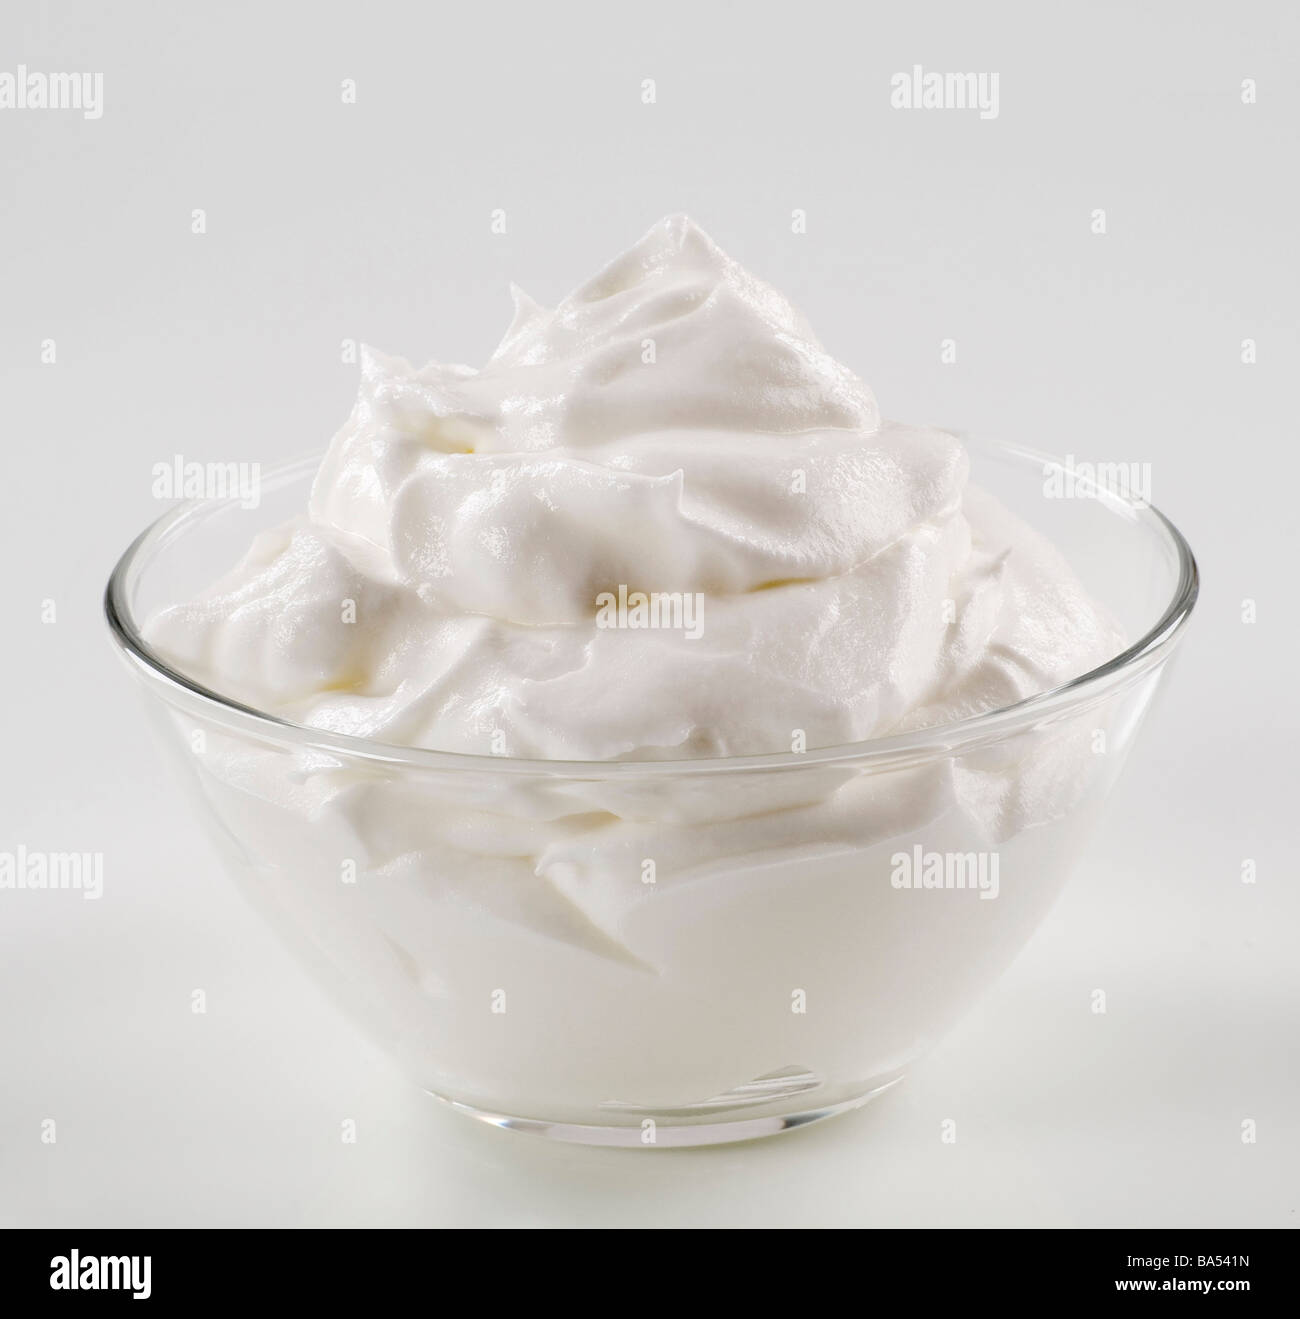 Bowl of white cream Stock Photo